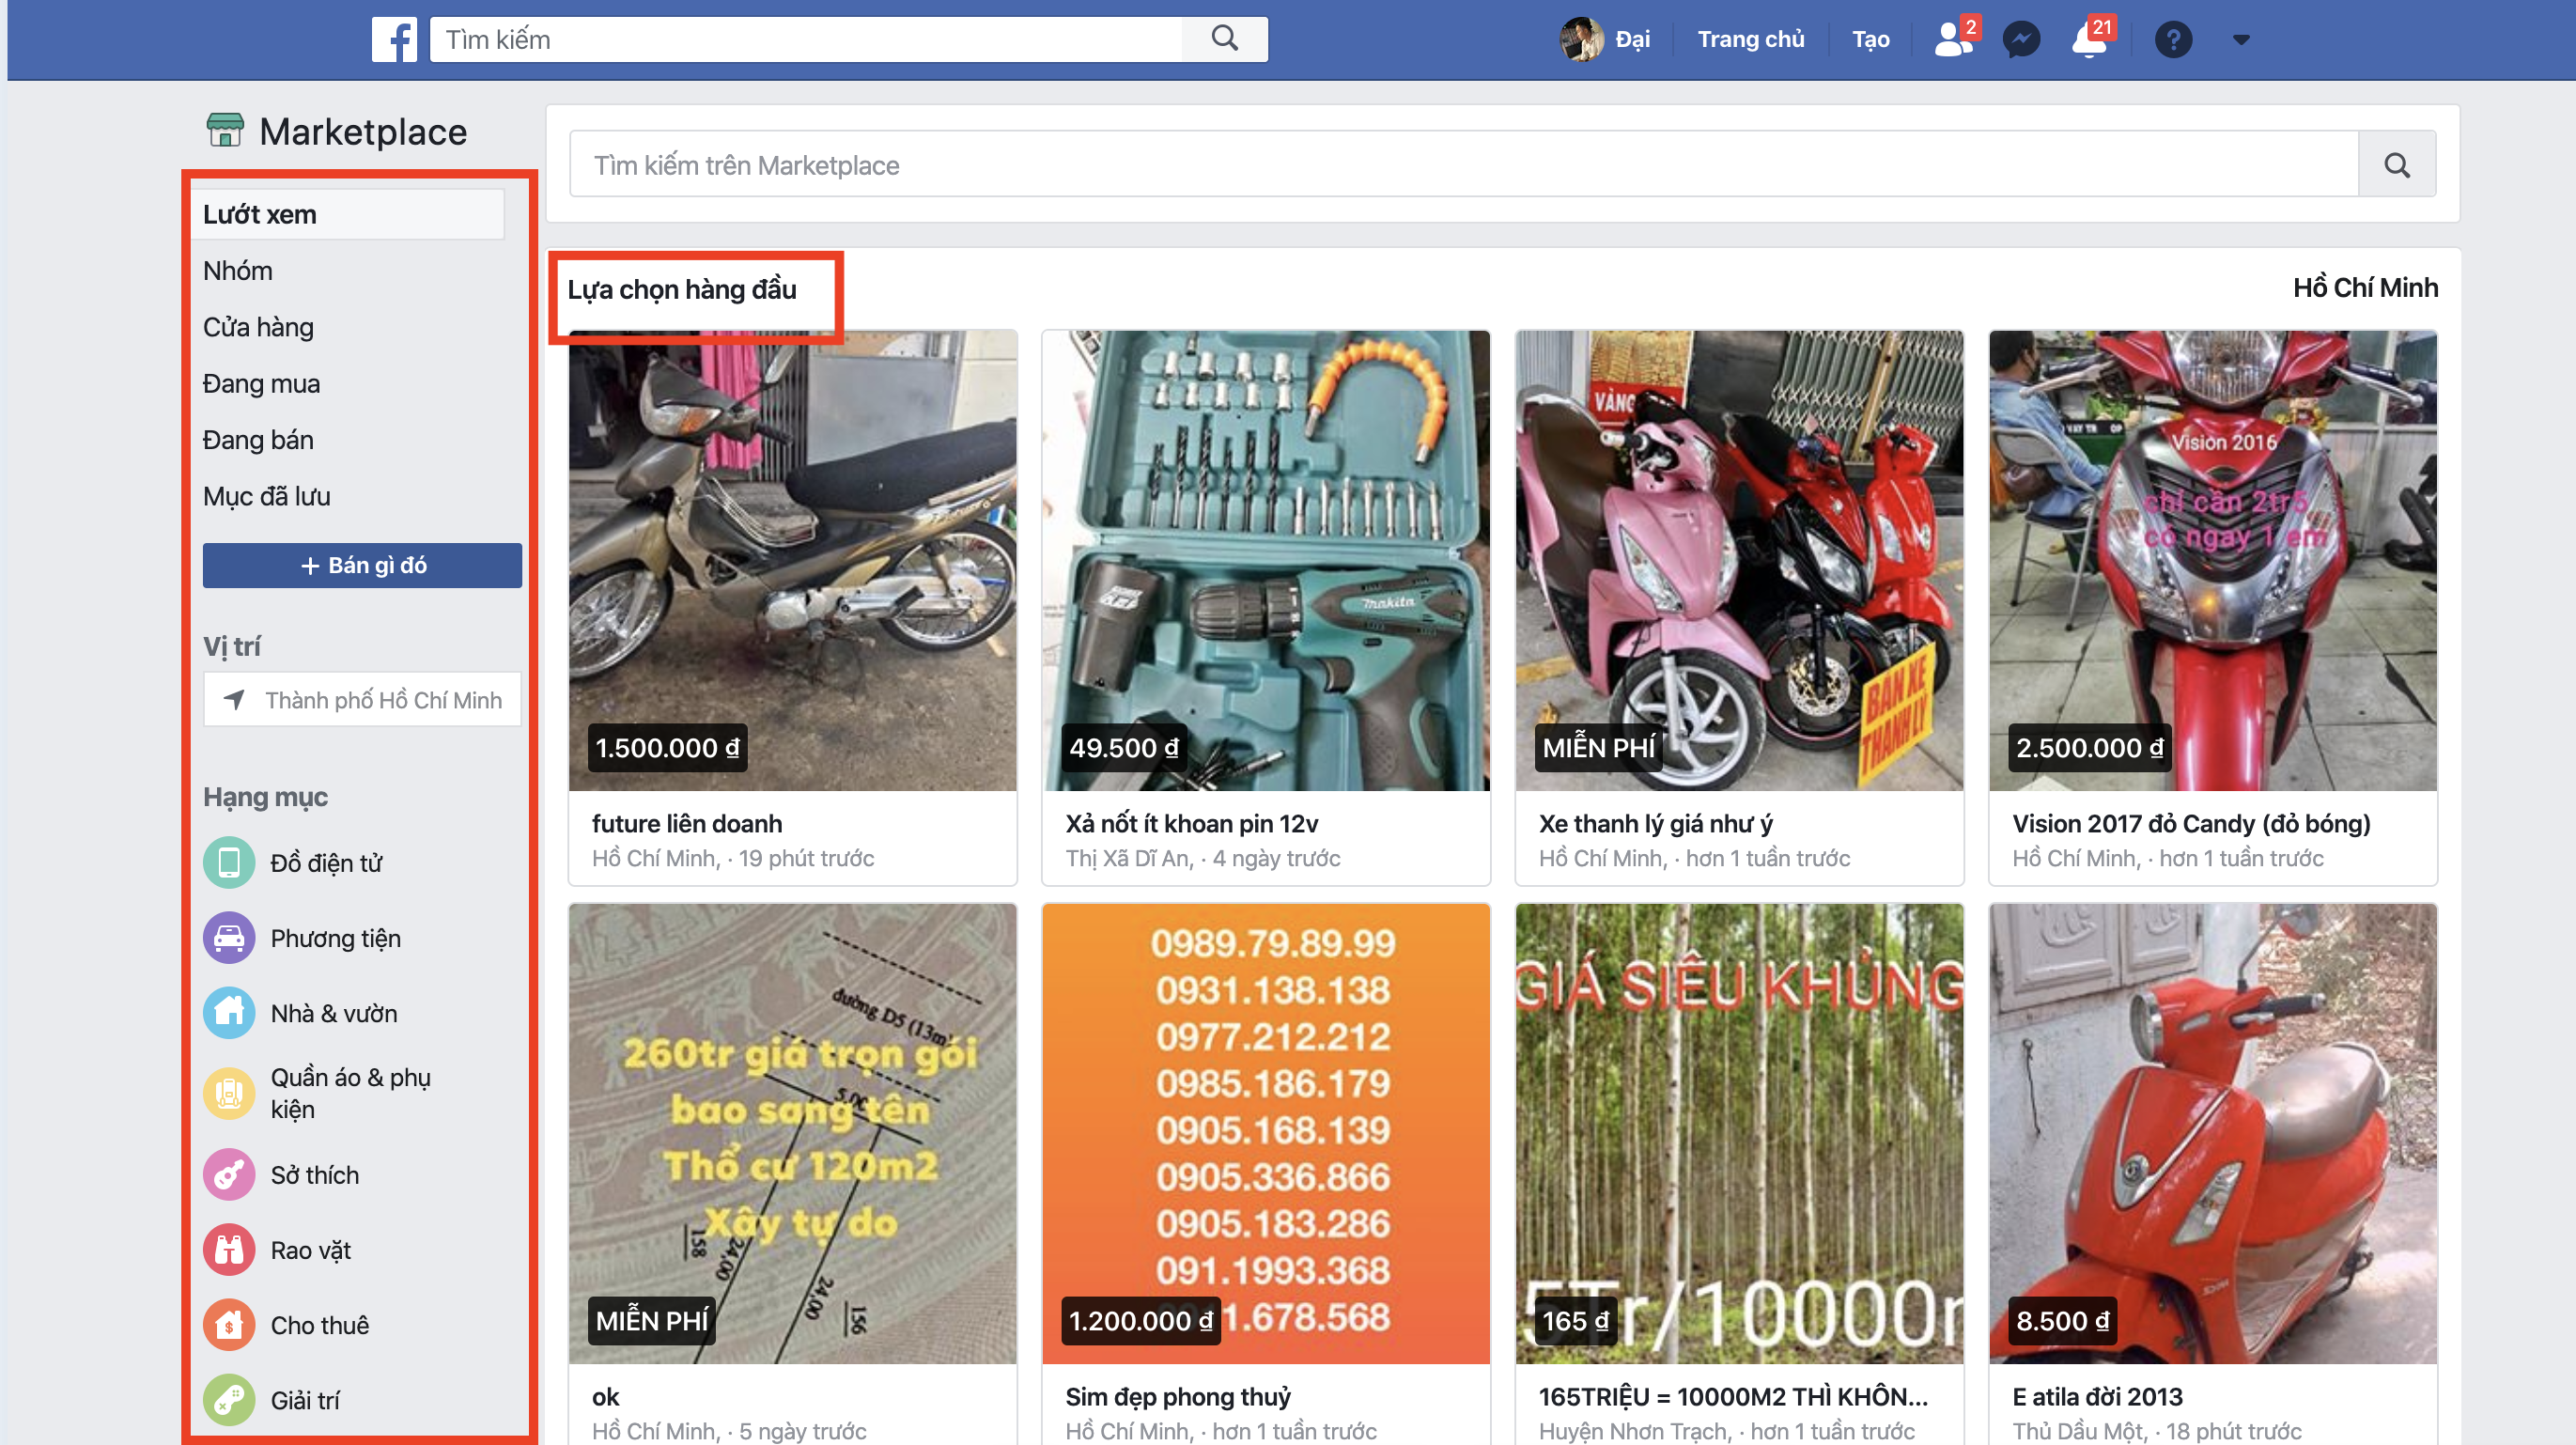 Chia sẻ mẹo mua hàng từ Facebook Marketplace tránh bị lừa 1